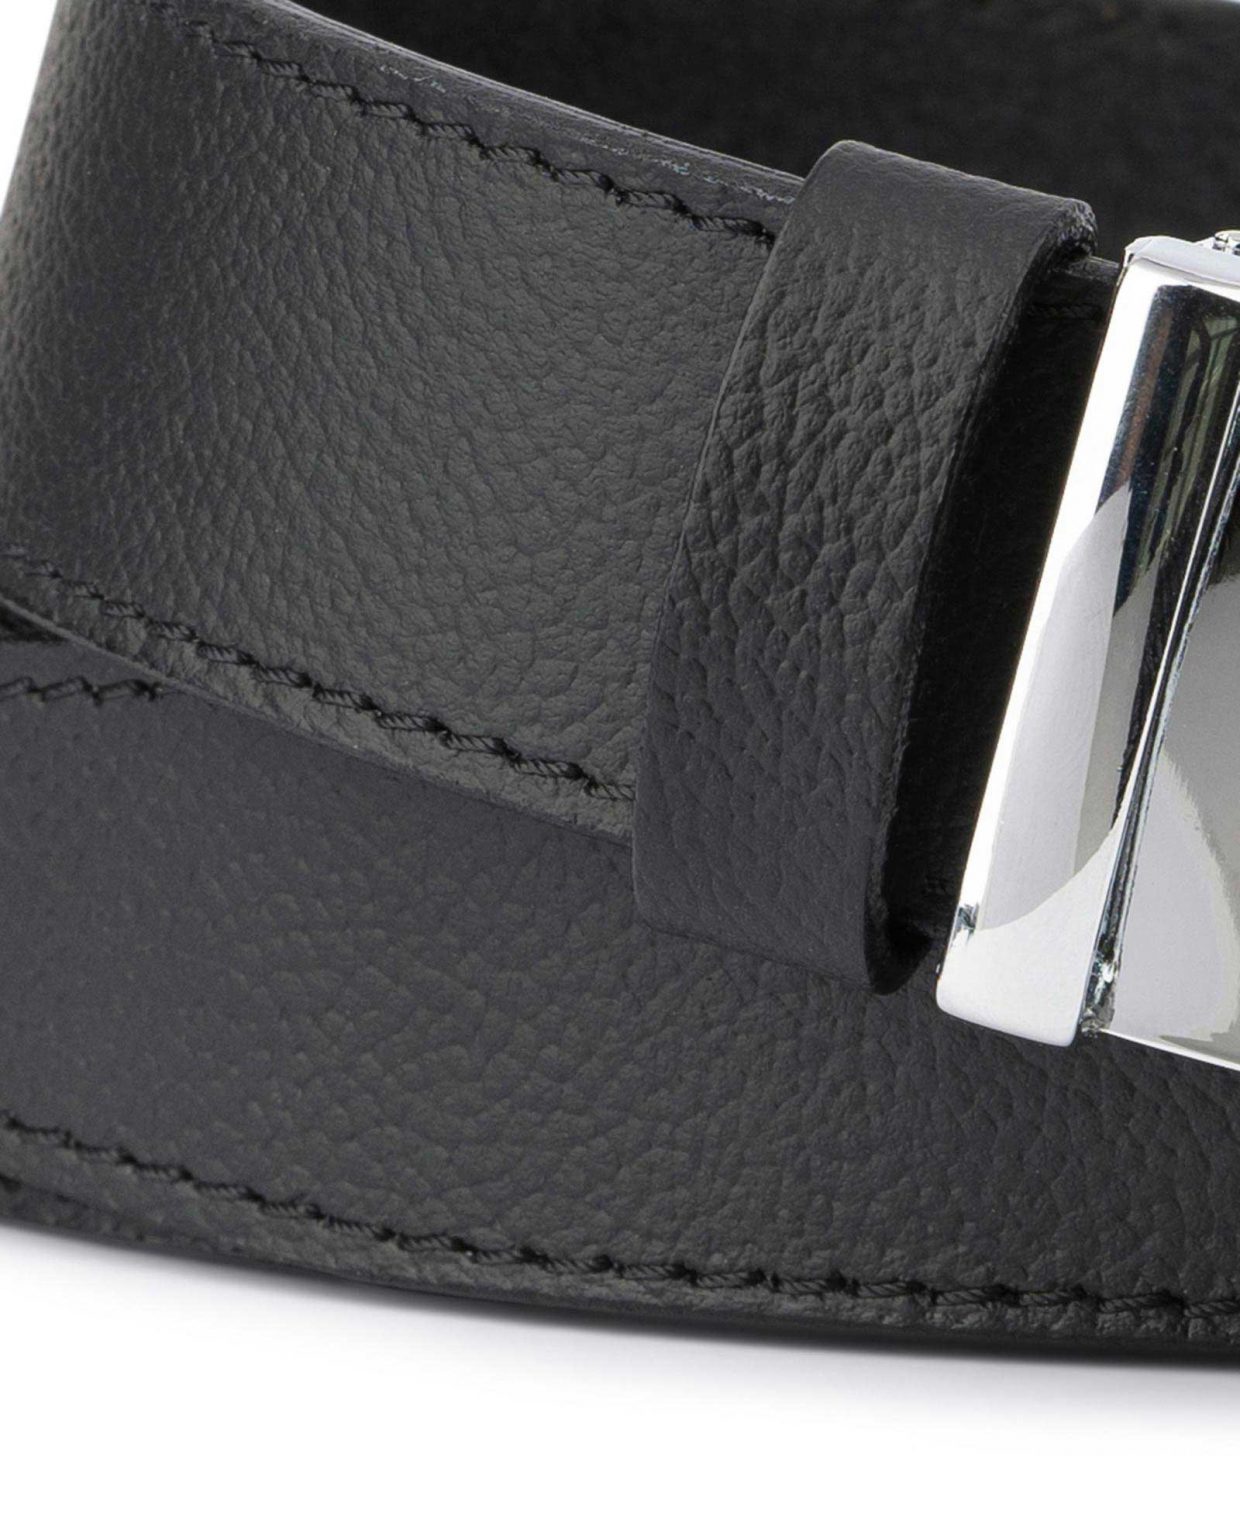 Buy Black Comfort Click Belt For Men | LeatherBeltsOnline.com